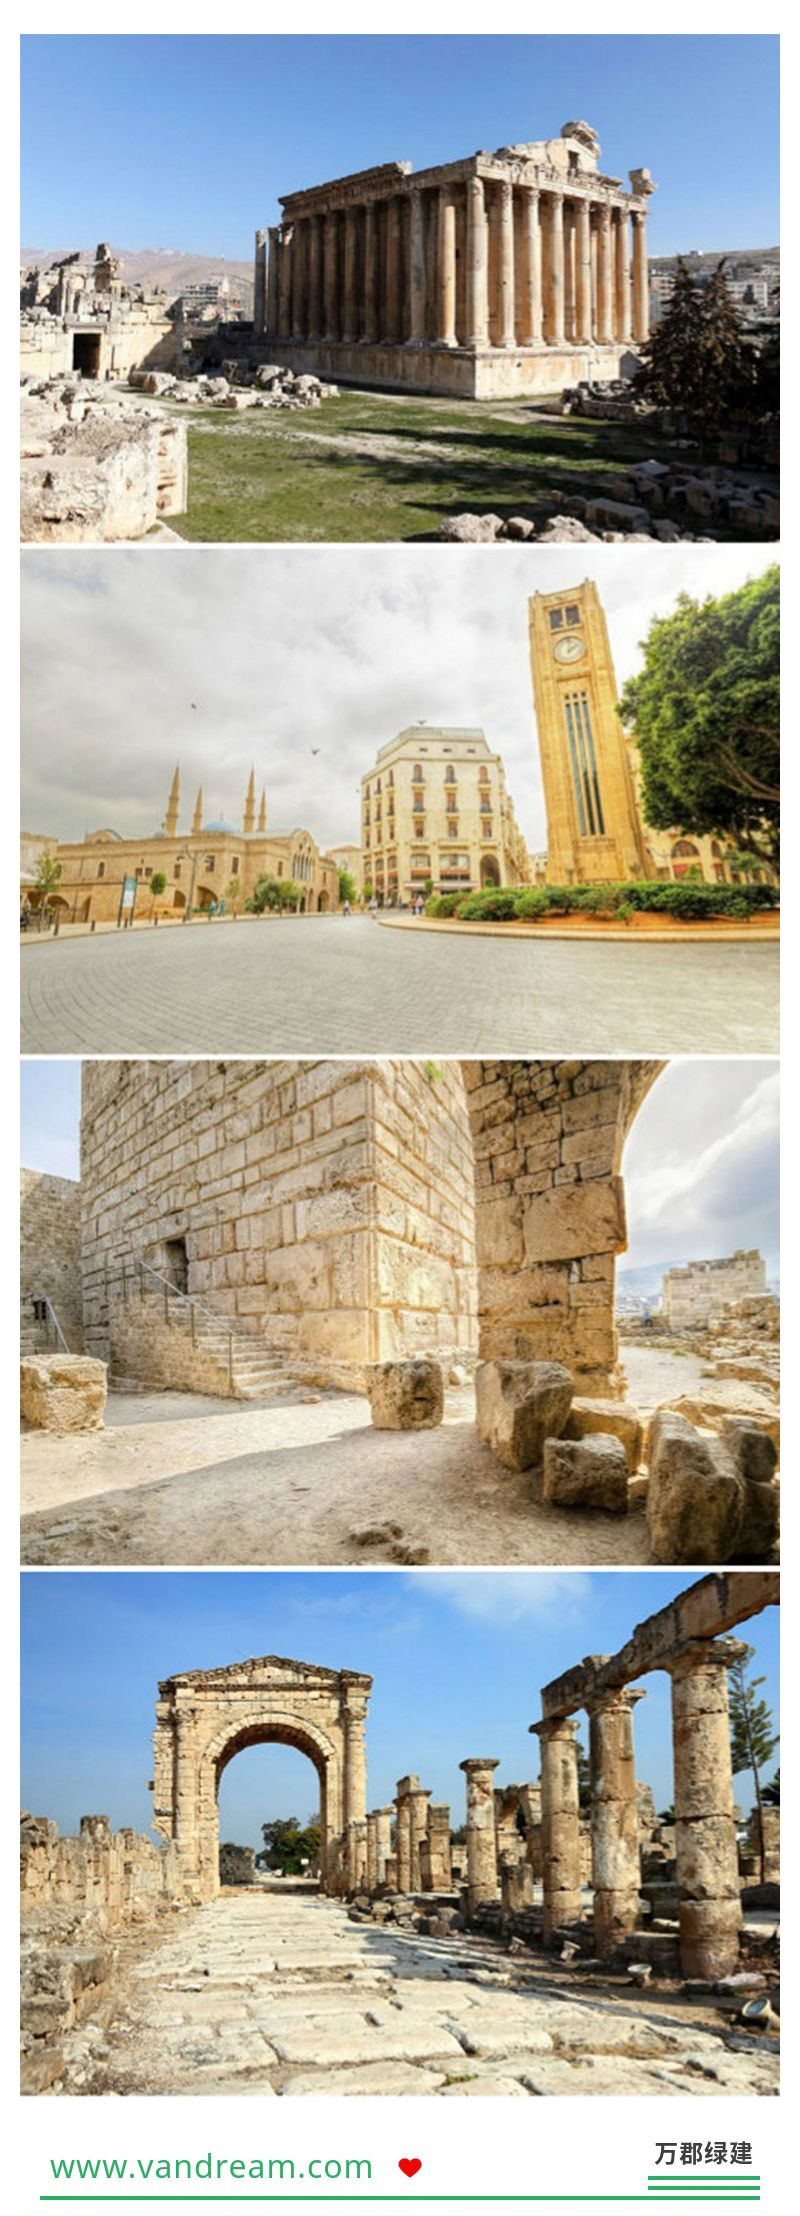 建筑视觉 | 黎巴嫩的骄傲 宏伟的巨石建筑